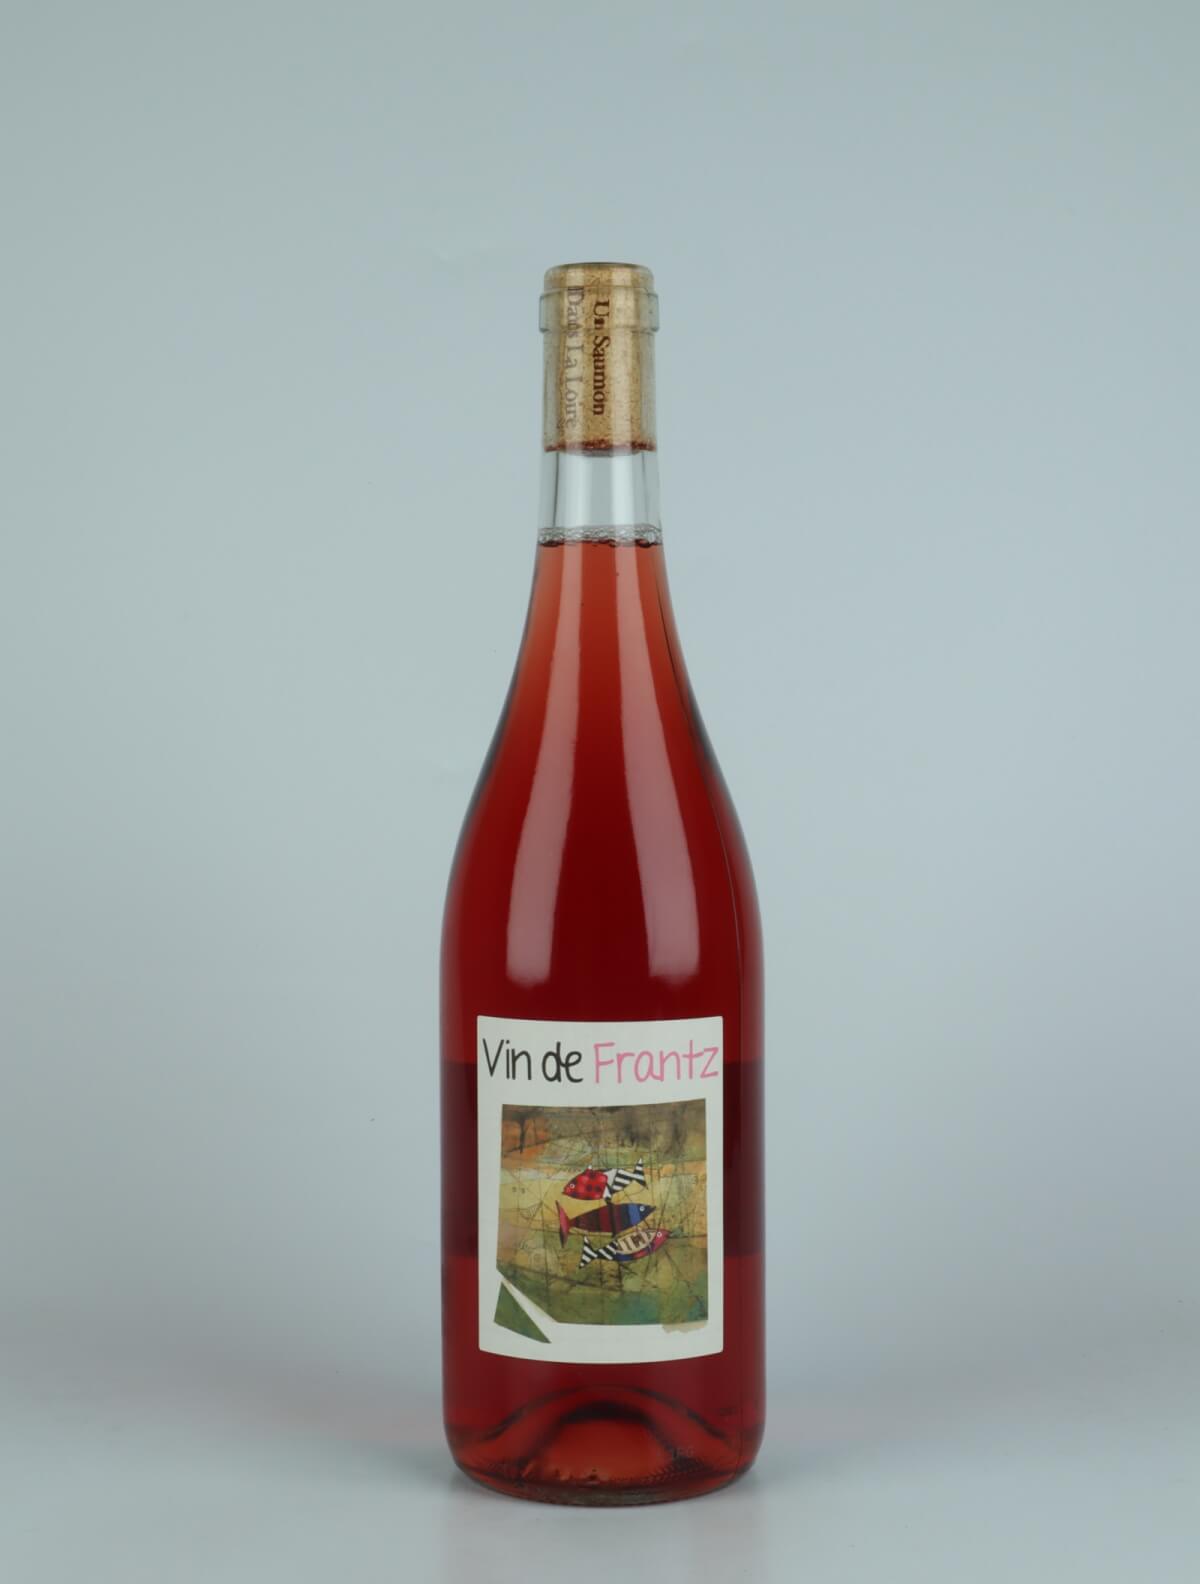 A bottle 2022 Rosé - Vin de Frantz Rosé from Frantz Saumon, Loire in France